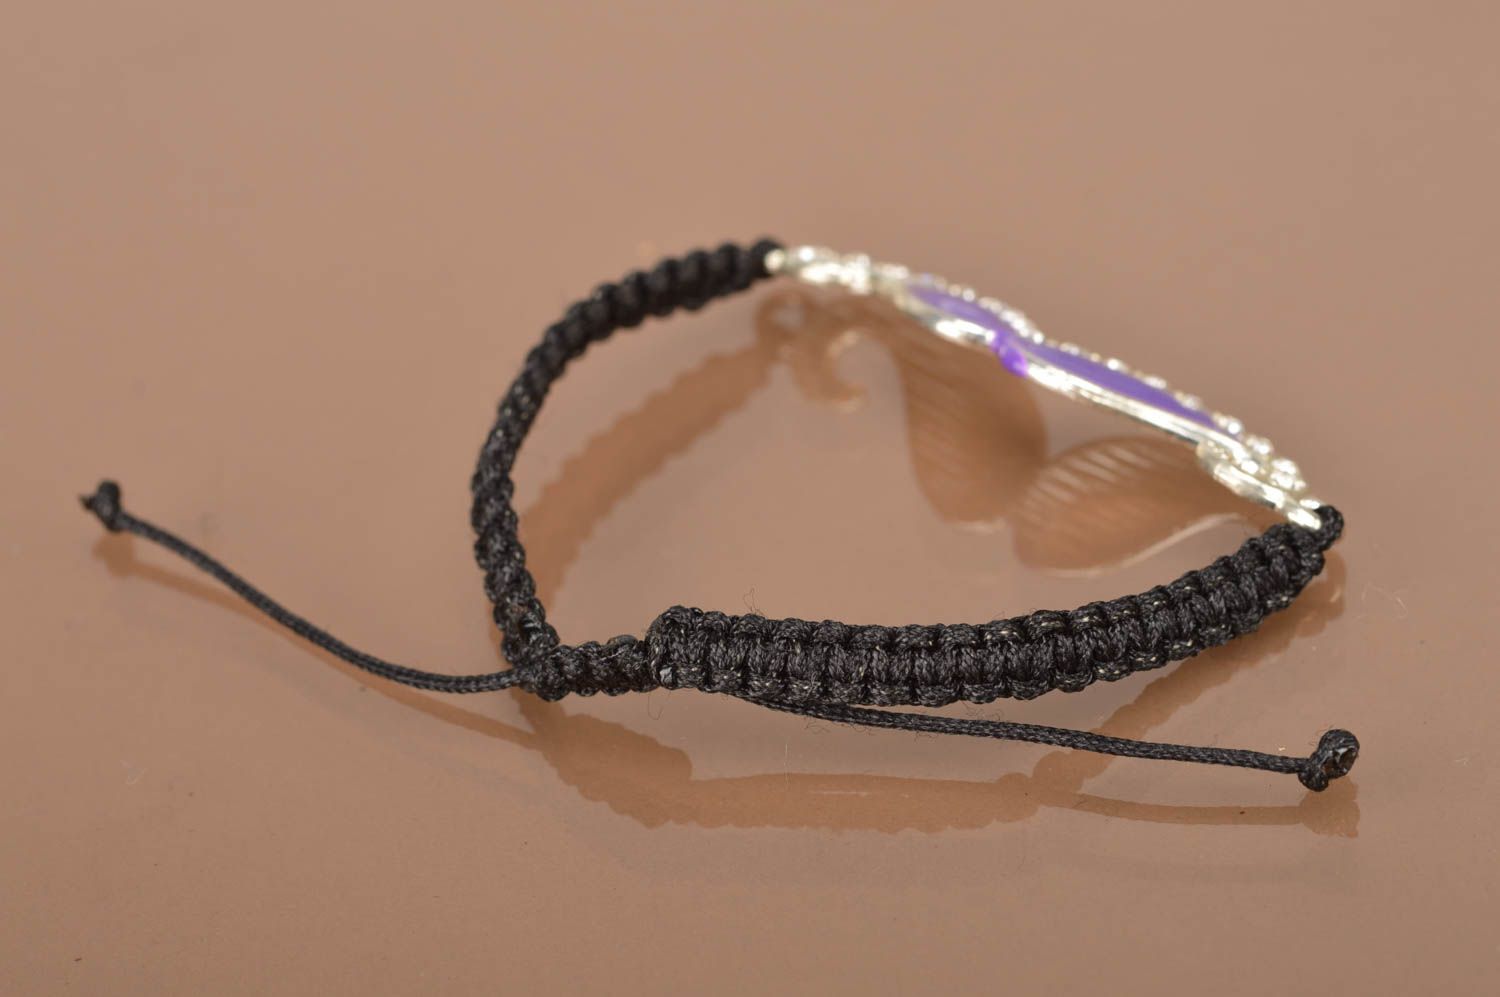 Bright handmade braided wrist bracelet stylish friendship bracelet jewelry ideas photo 5